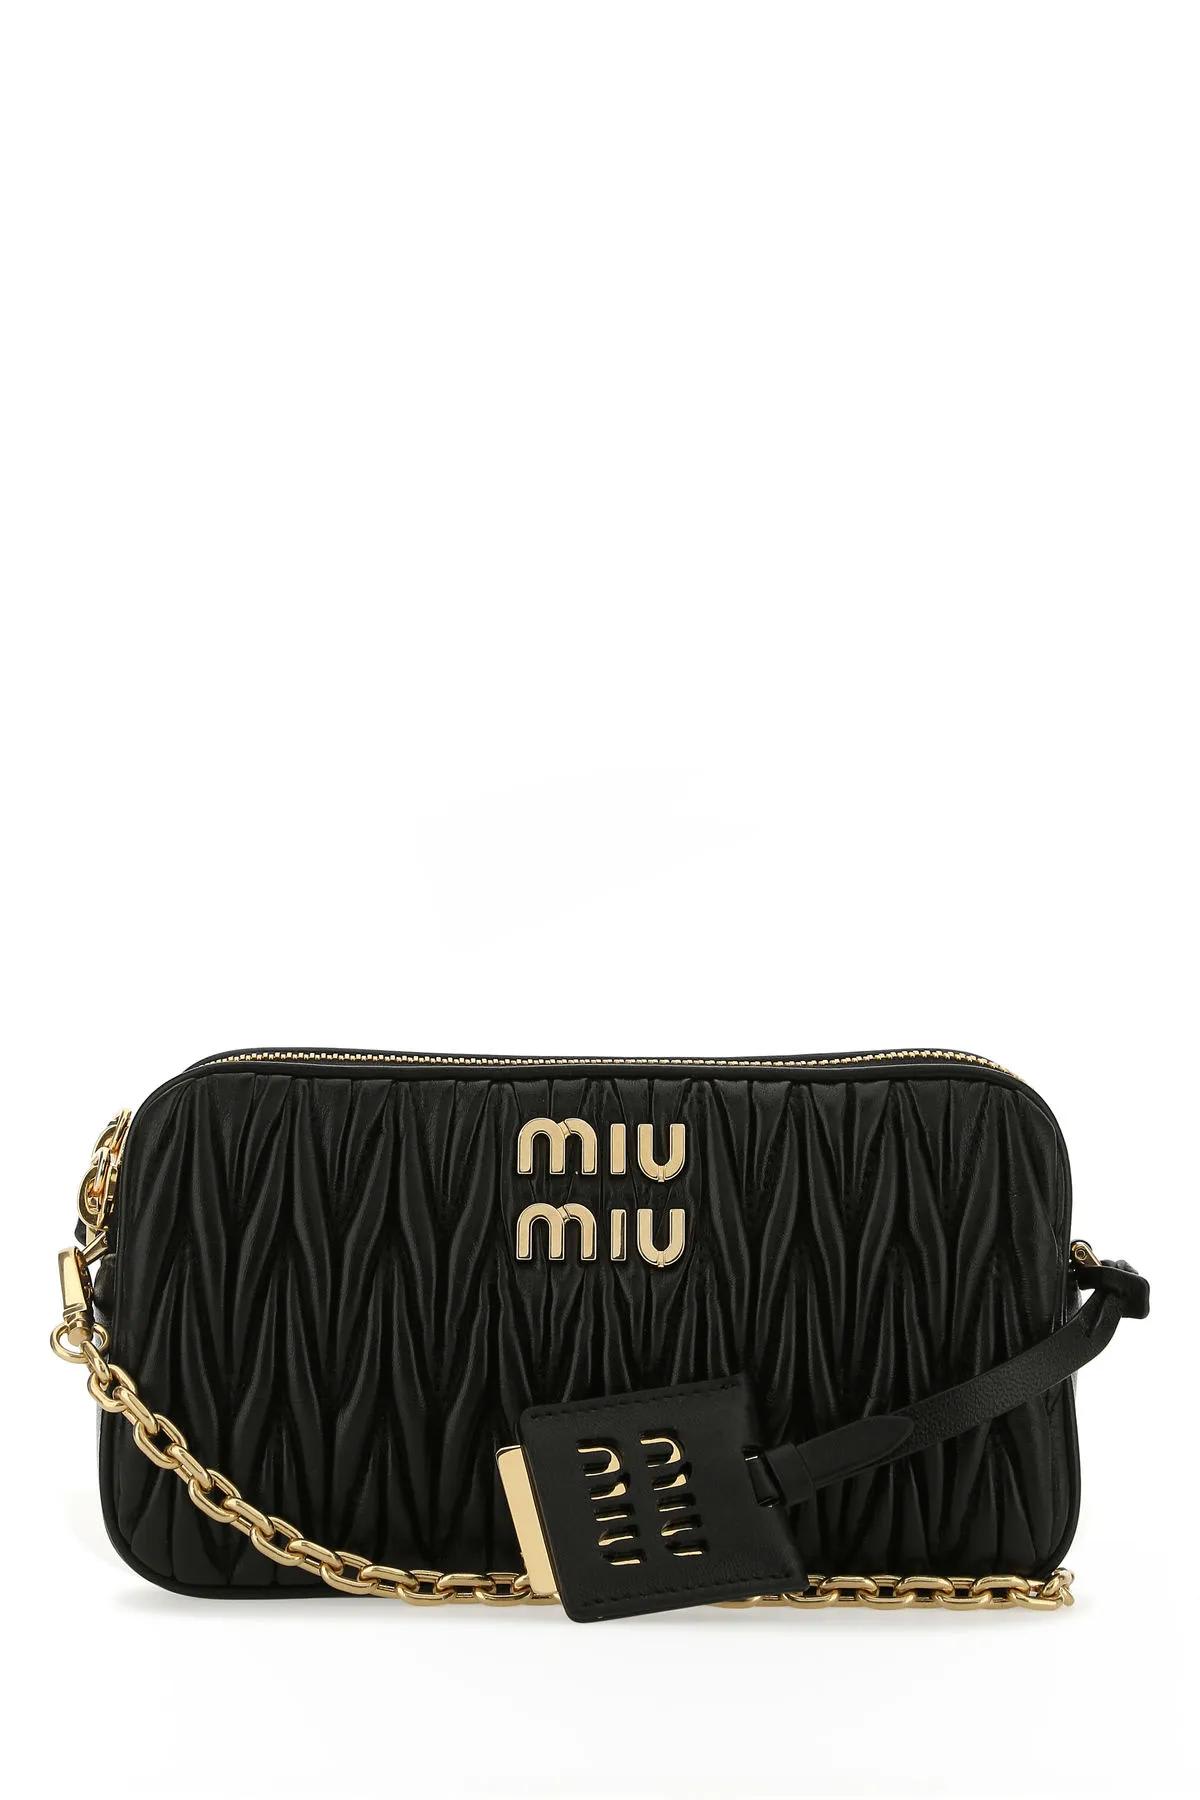 Miu Miu Crossbody/Shoulder Bag for Sale in Lemon Grove, CA